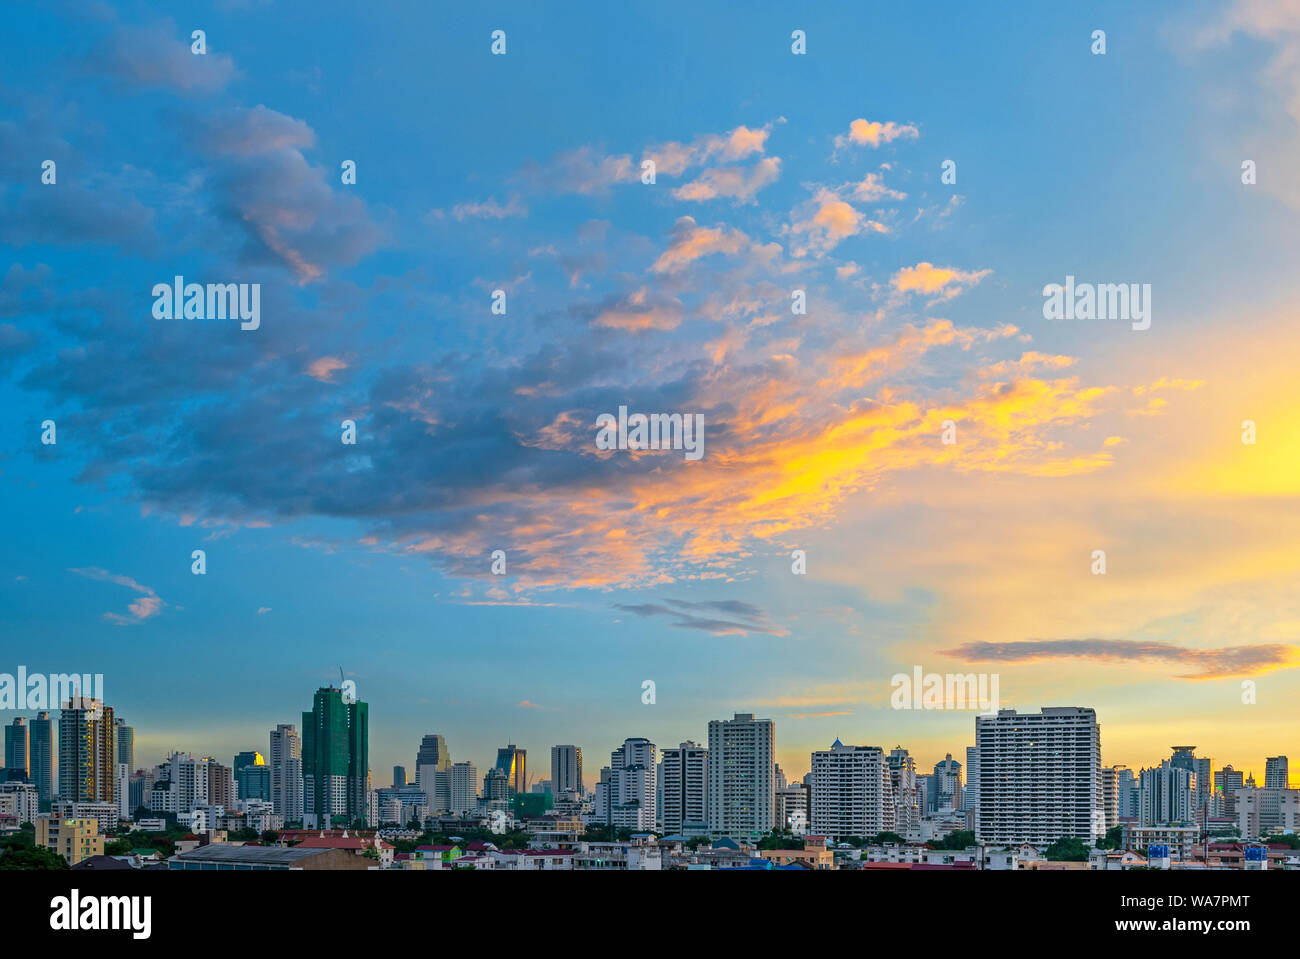 Die modernen Wolkenkratzer und städtischen Skyline von Bangkok während einer farbenfrohen Sonnenaufgang, Thailand. Stockfoto